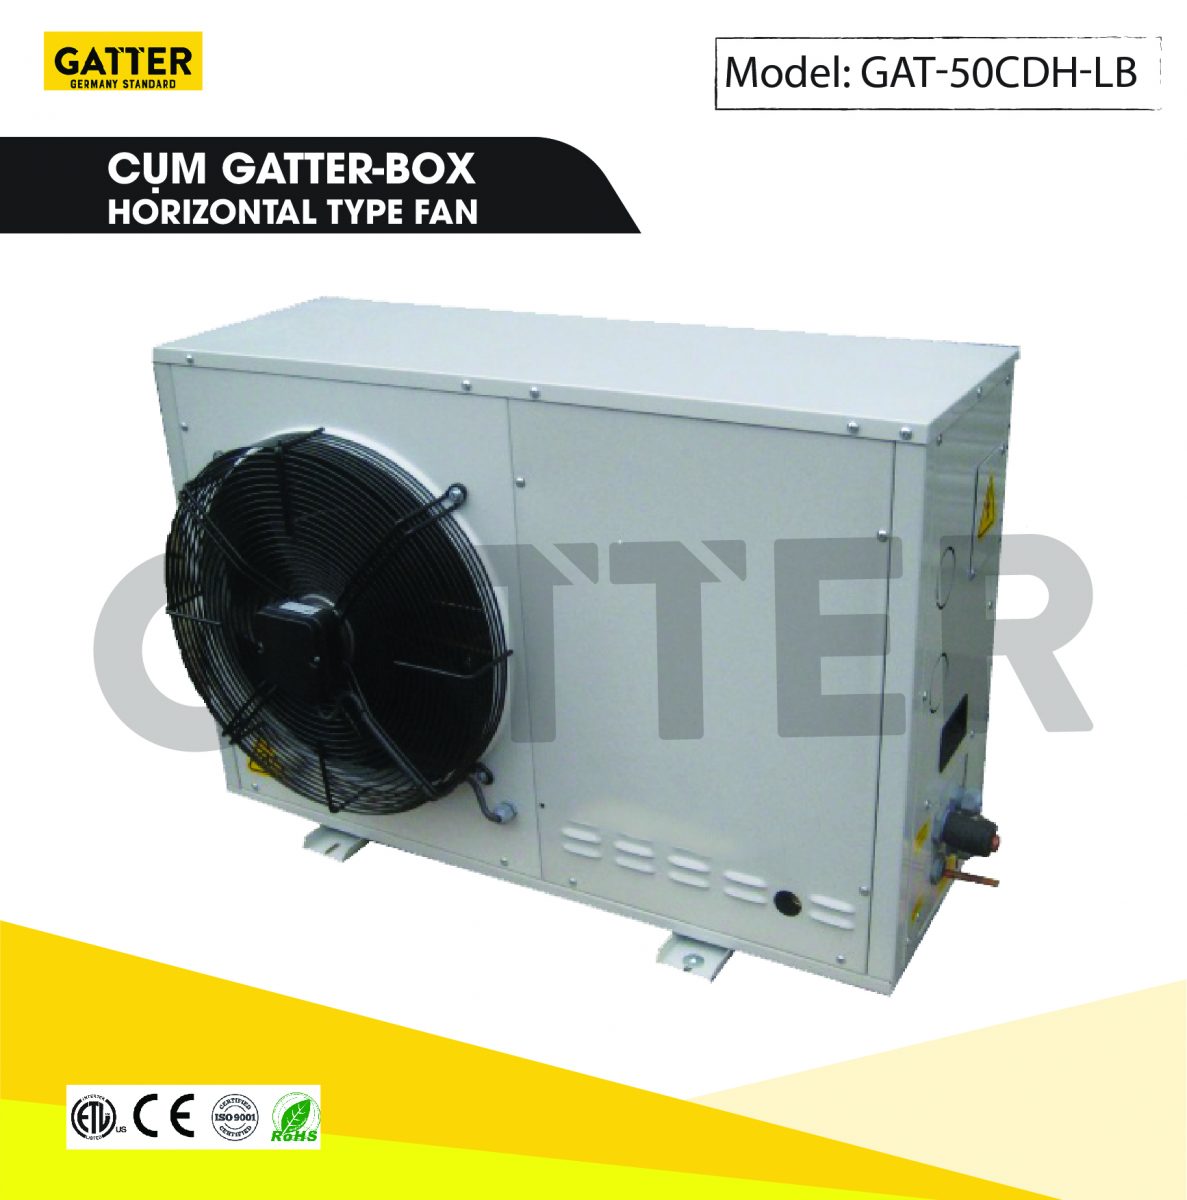 Cụm máy nén Gatter-box GAT-50CDH-LB